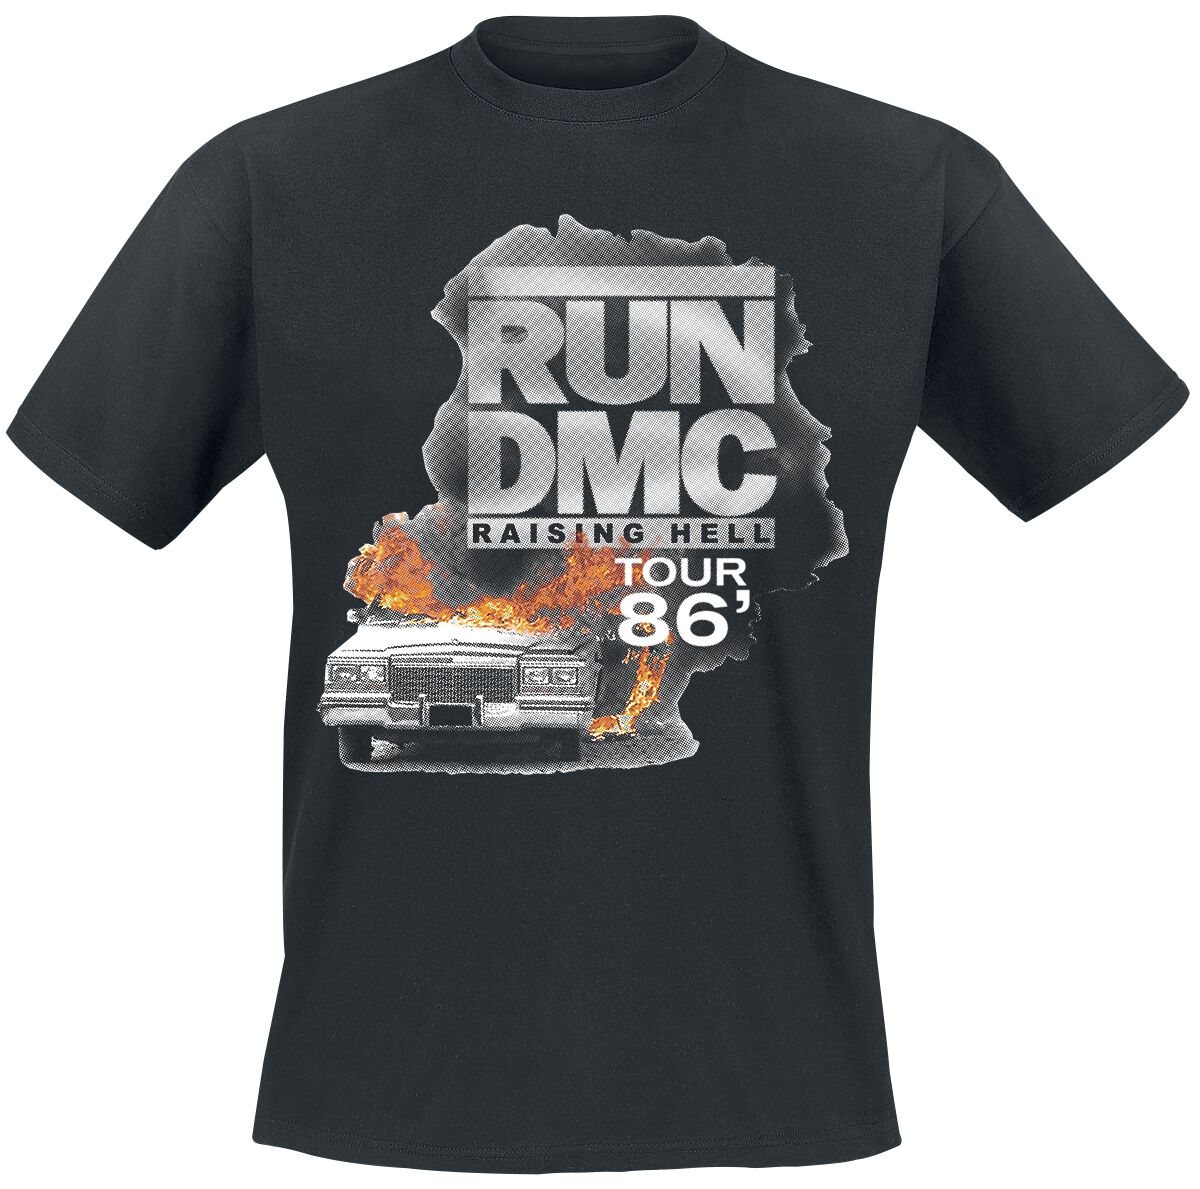 Run DMC T-Shirt - Burning Cadillac Tour 86 - S bis L - für Männer - Größe L - schwarz  - Lizenziertes Merchandise!